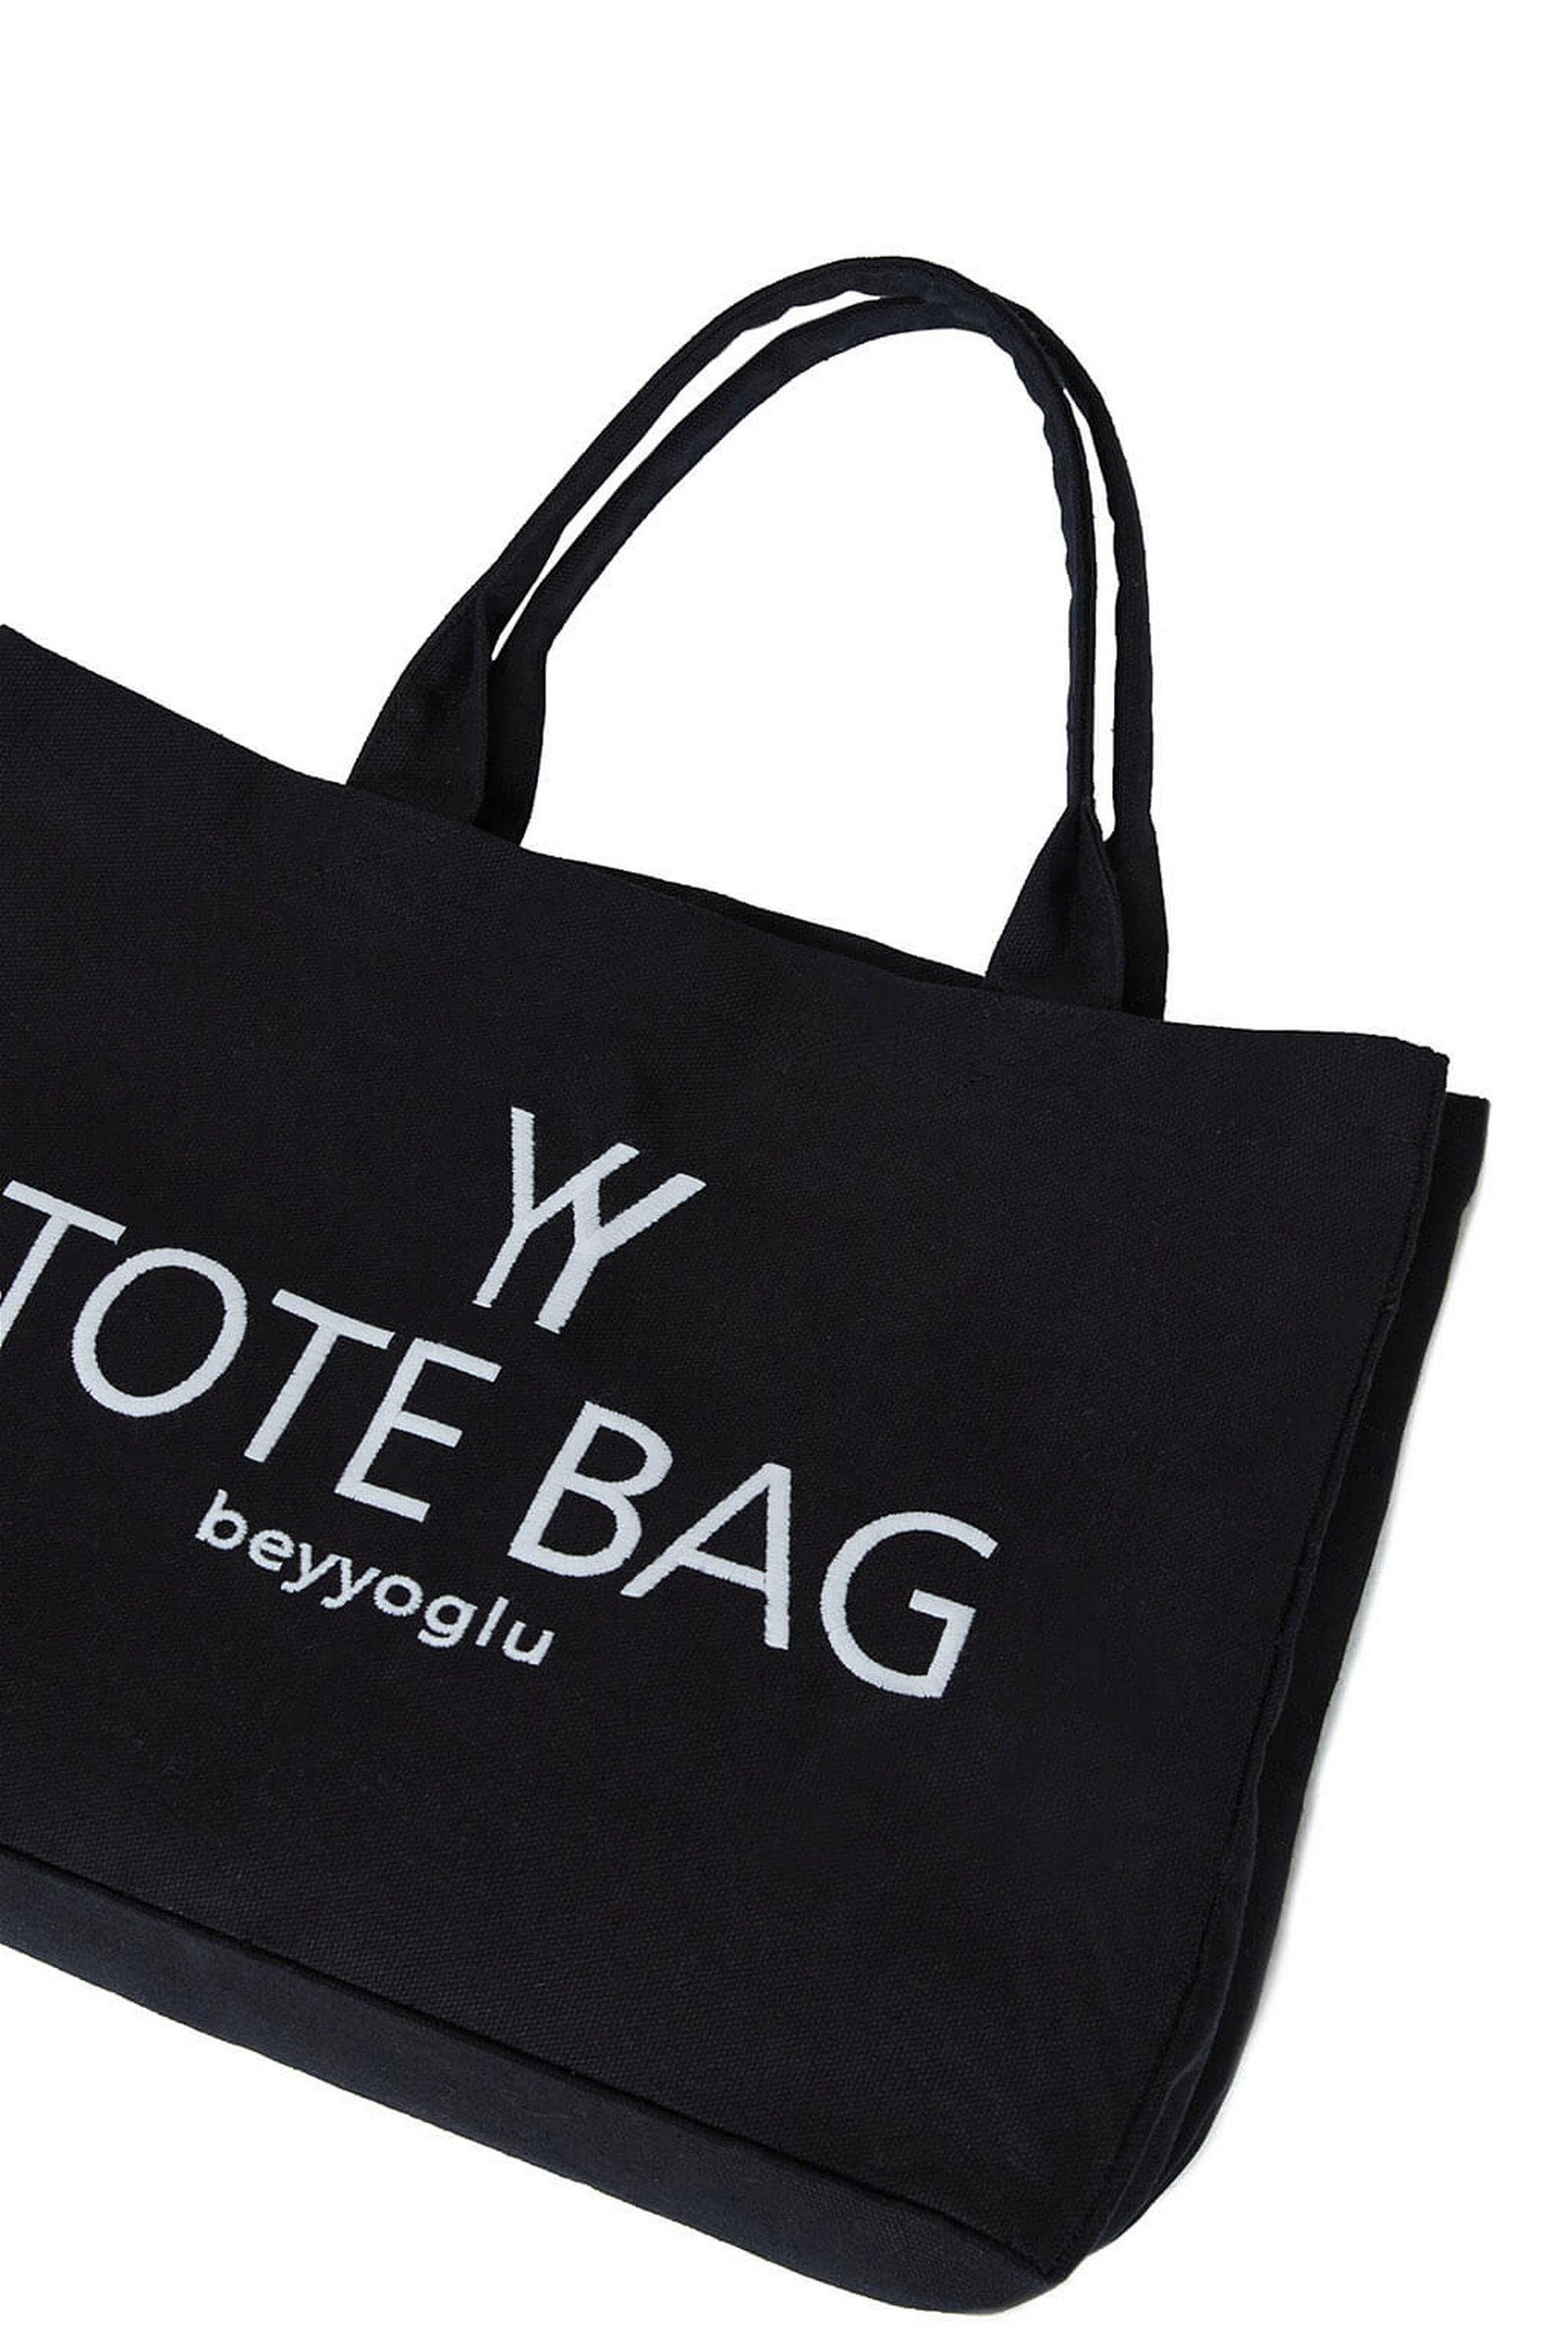 Yy Tote Bag